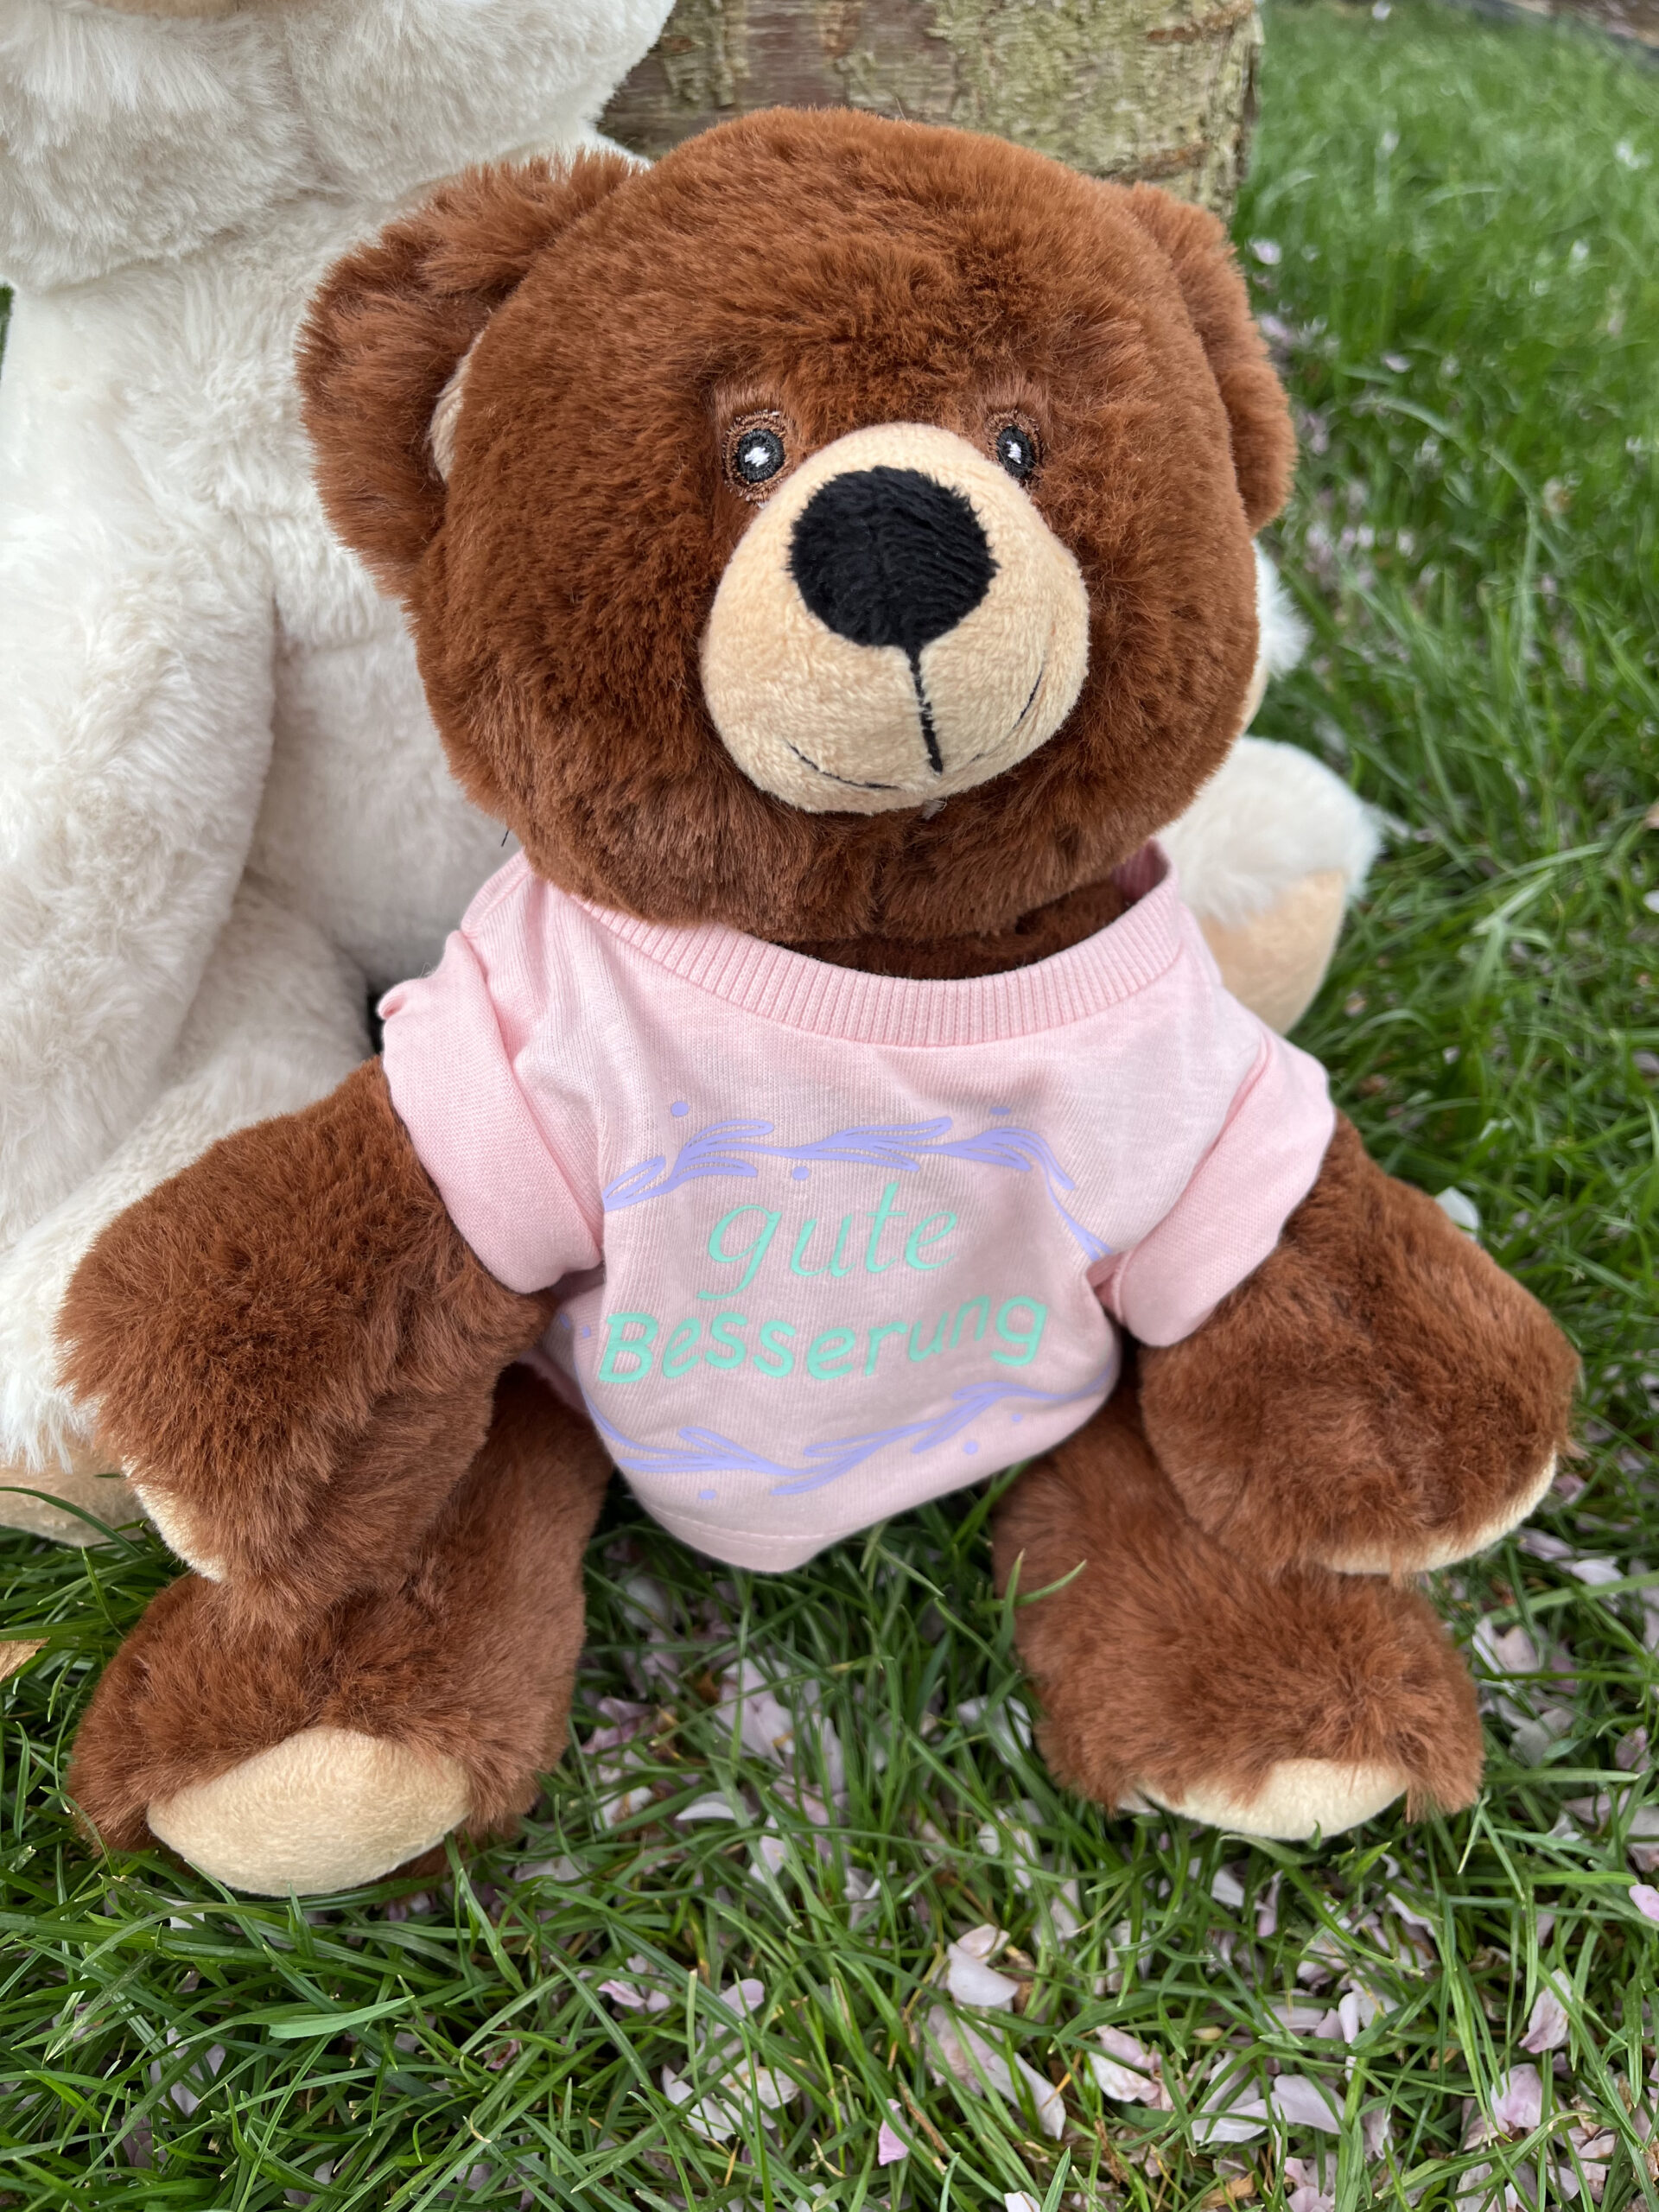 IMG 9390 scaled - kleiner Recycel- Teddybär  mit Wunsch-Print auf dem Shirt